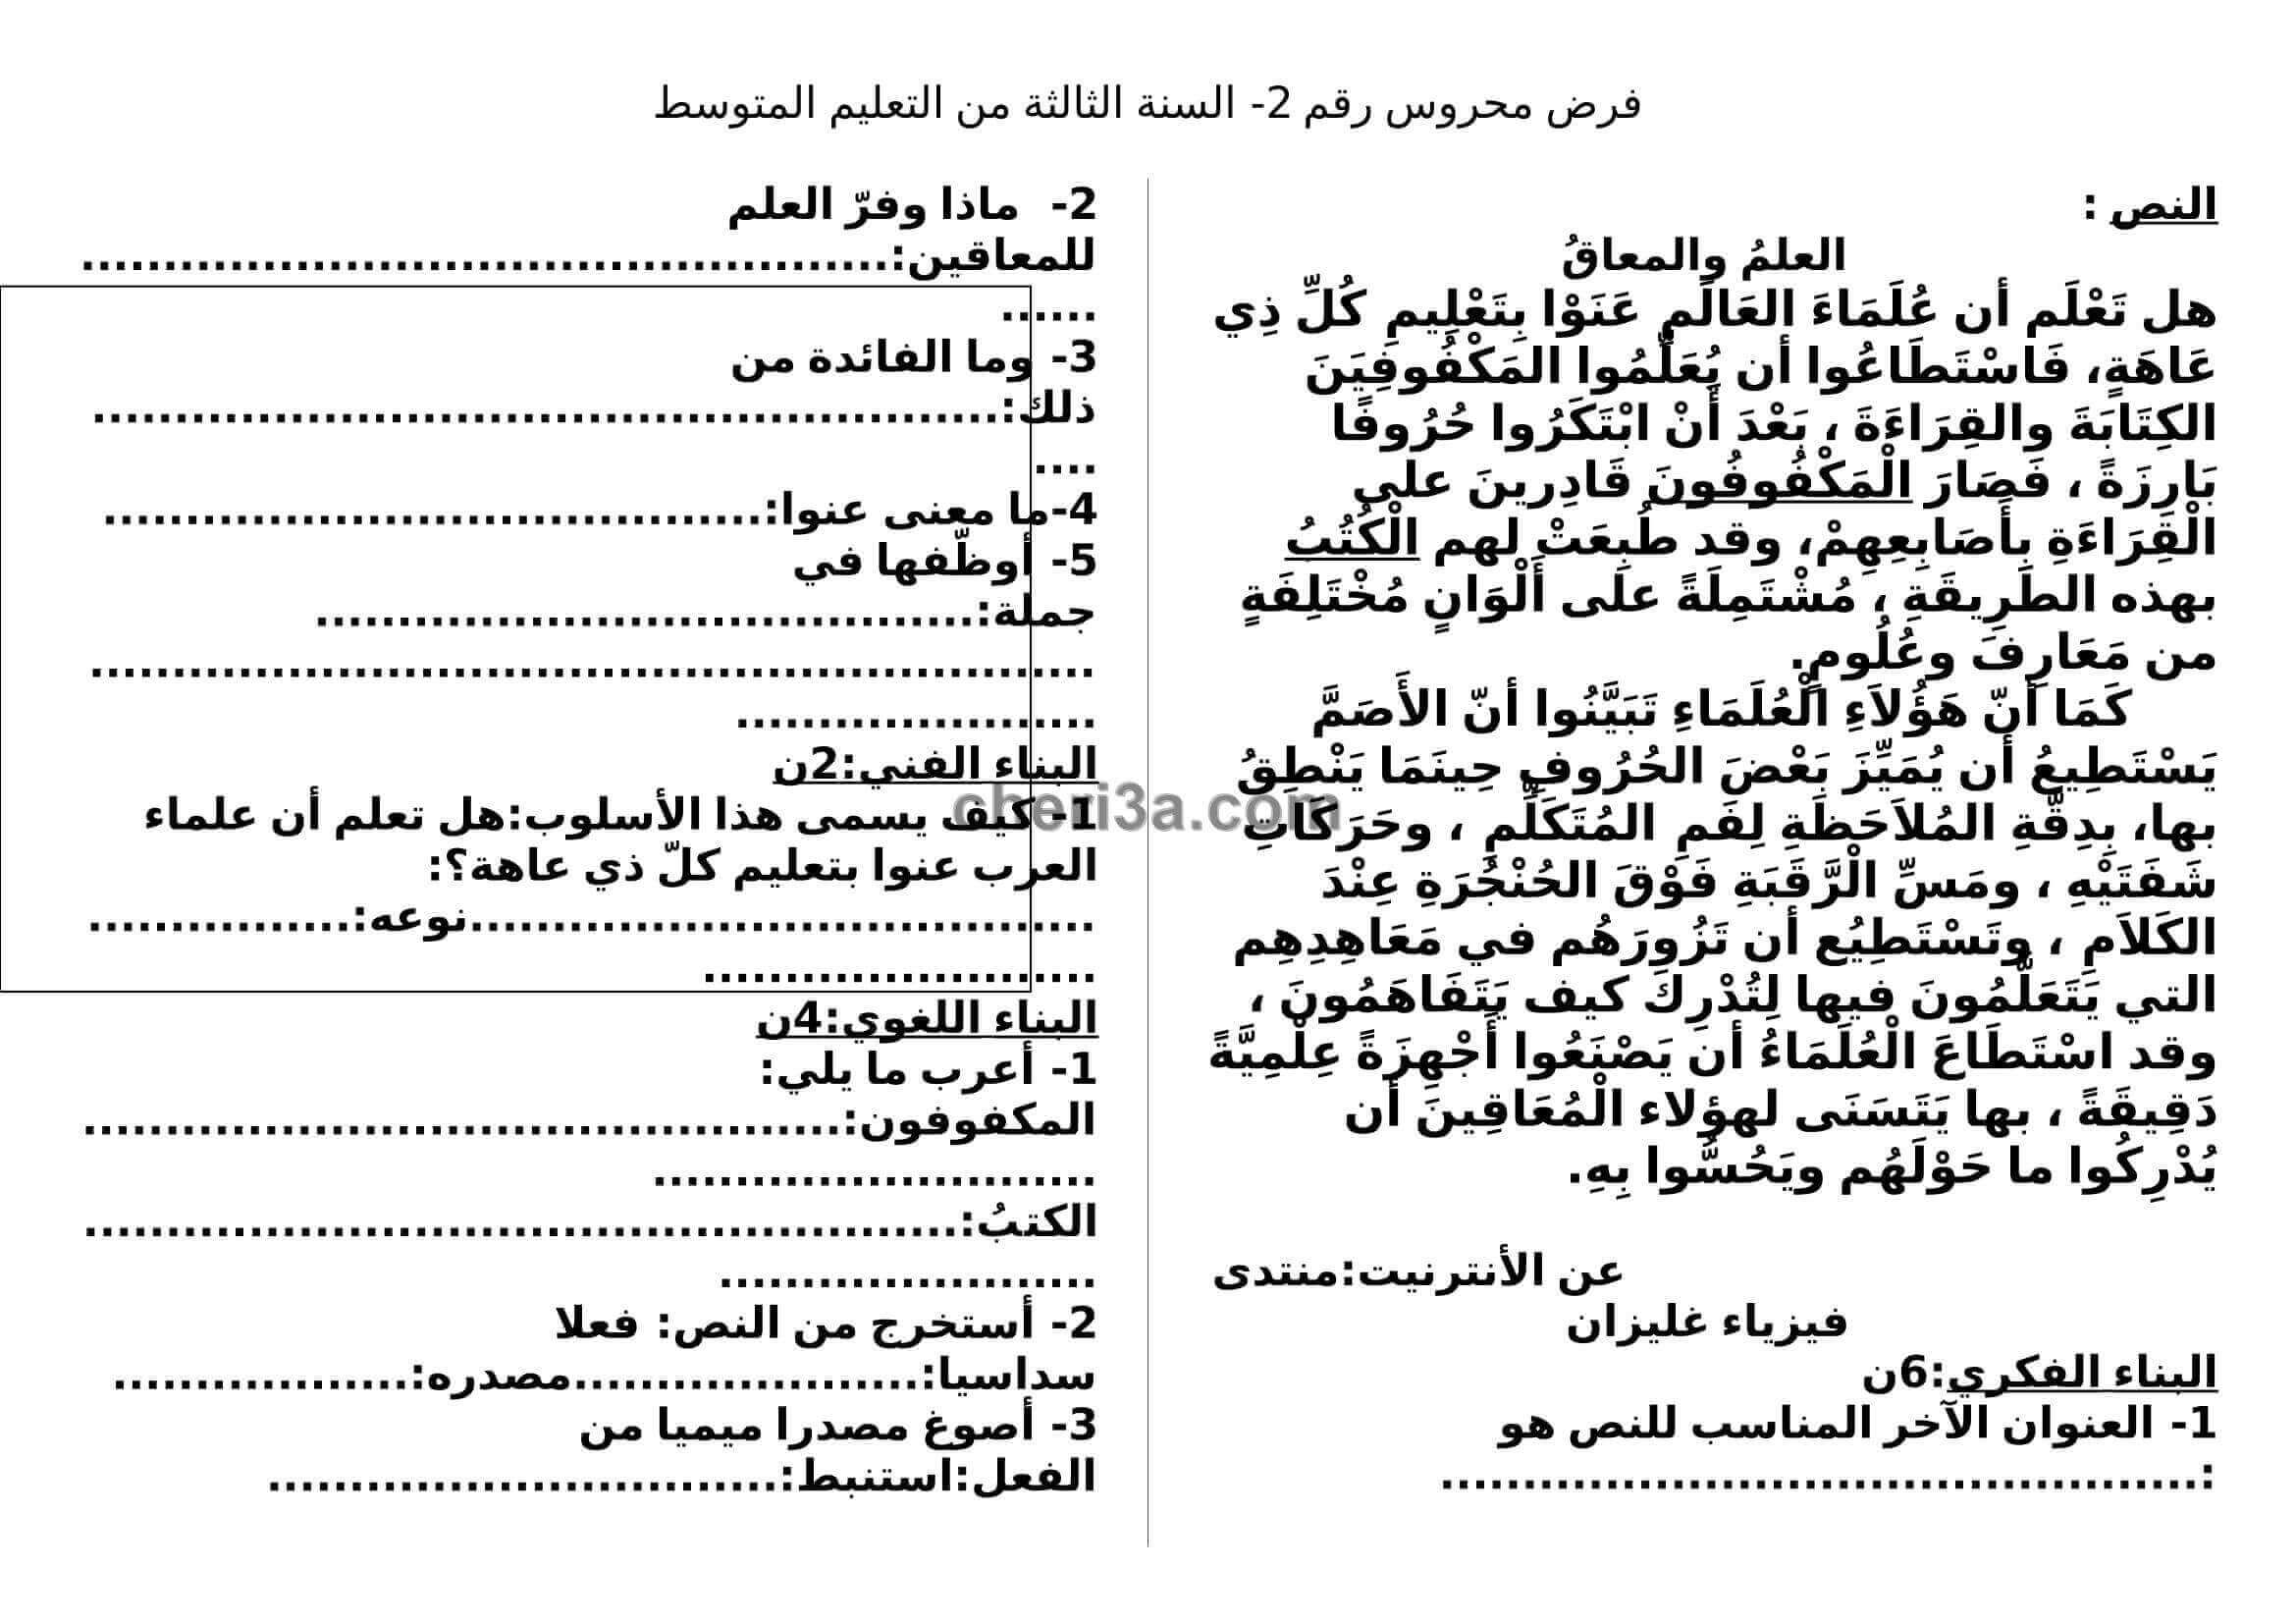 اختبار الفصل الاول للسنة الثالثة متوسط في اللغة العربية النموذج 2